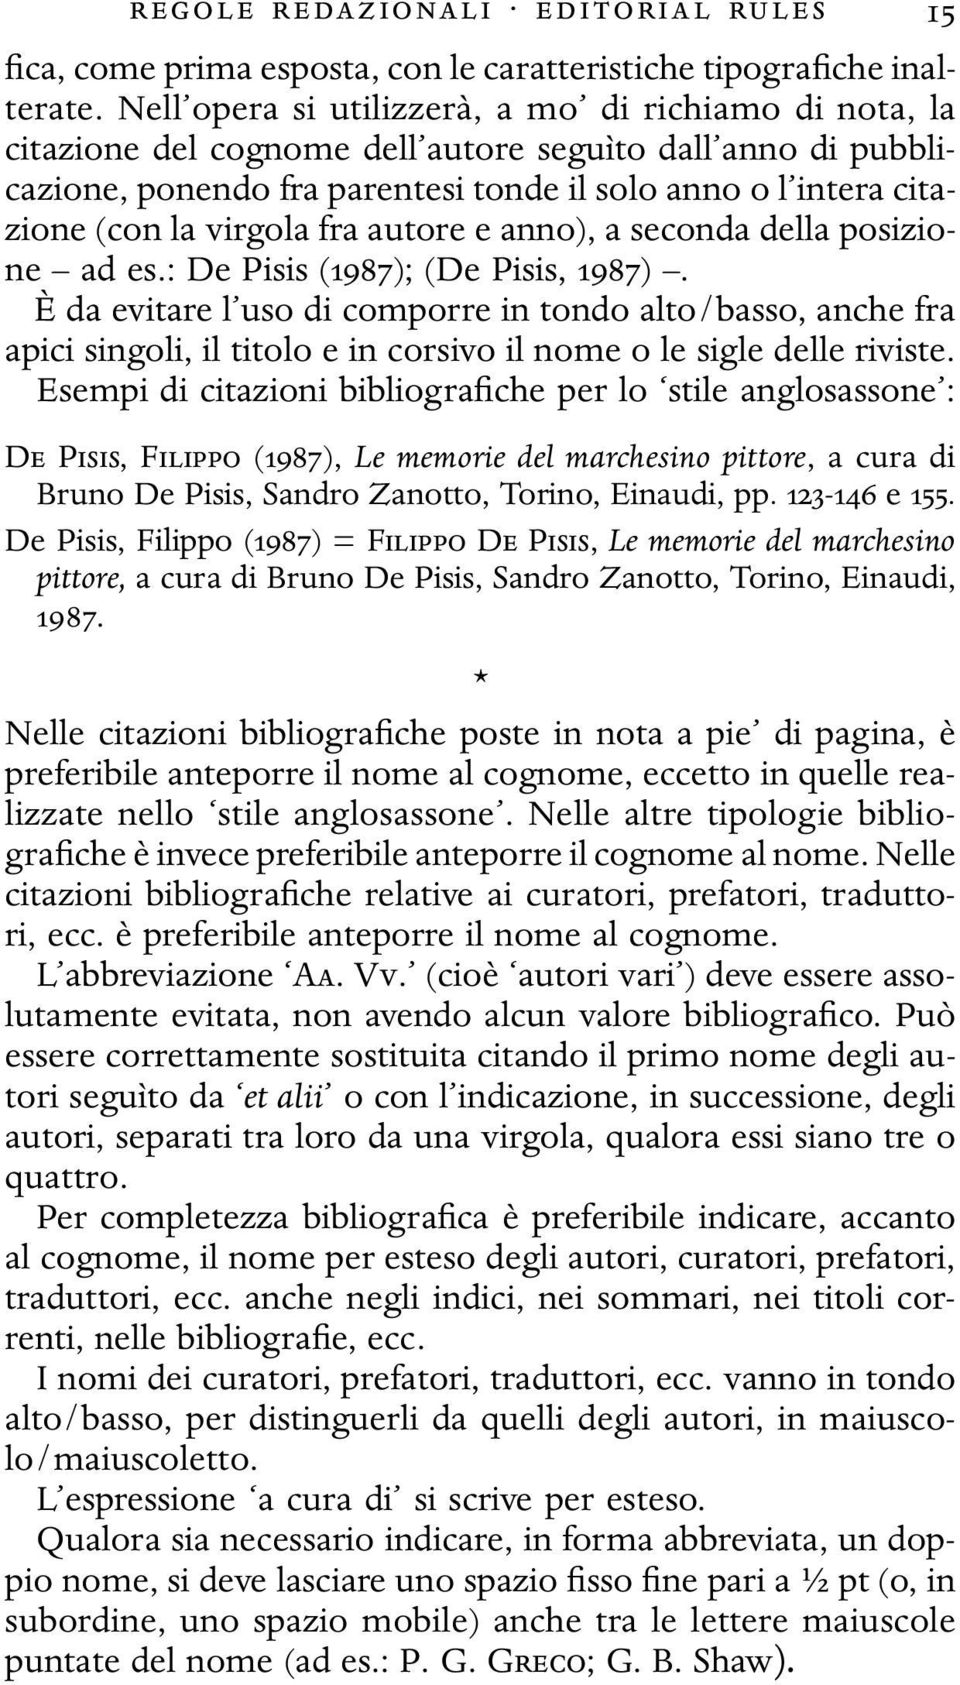 virgola fra autore e anno), a seconda della posizione ad es.: De Pisis (1987); (De Pisis, 1987).